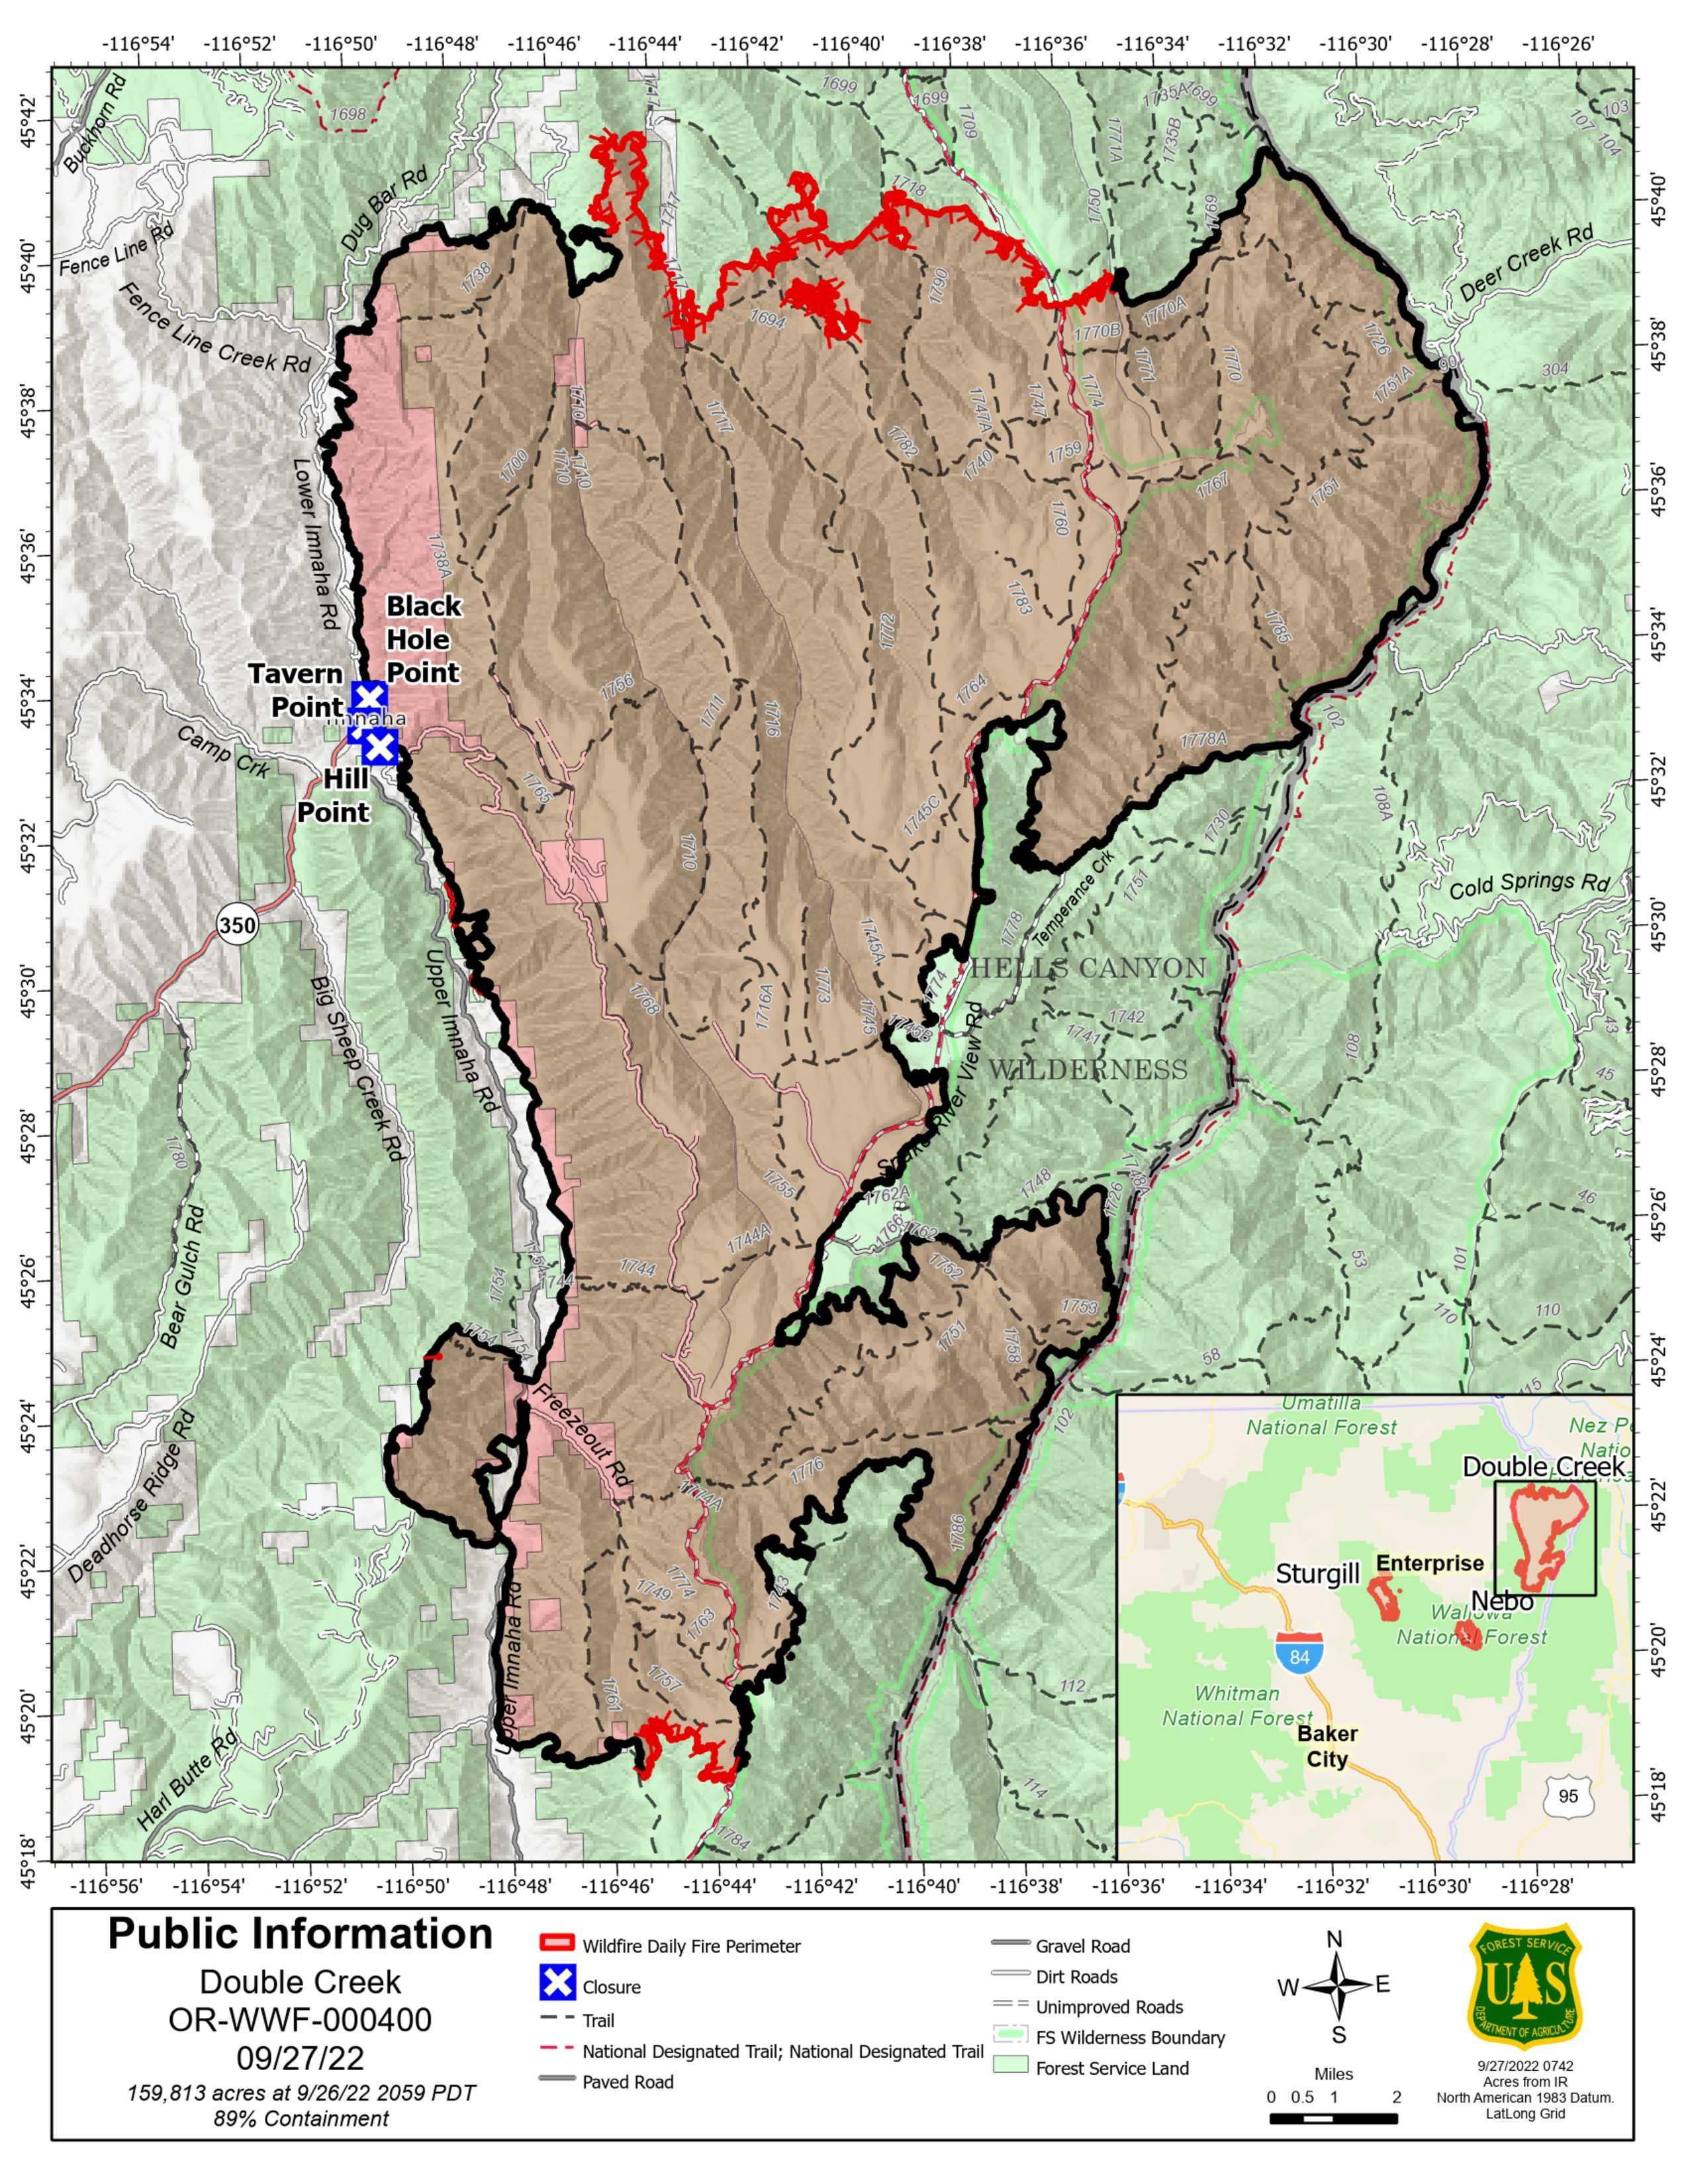 Double Creek Fire Map - 09/27/2022